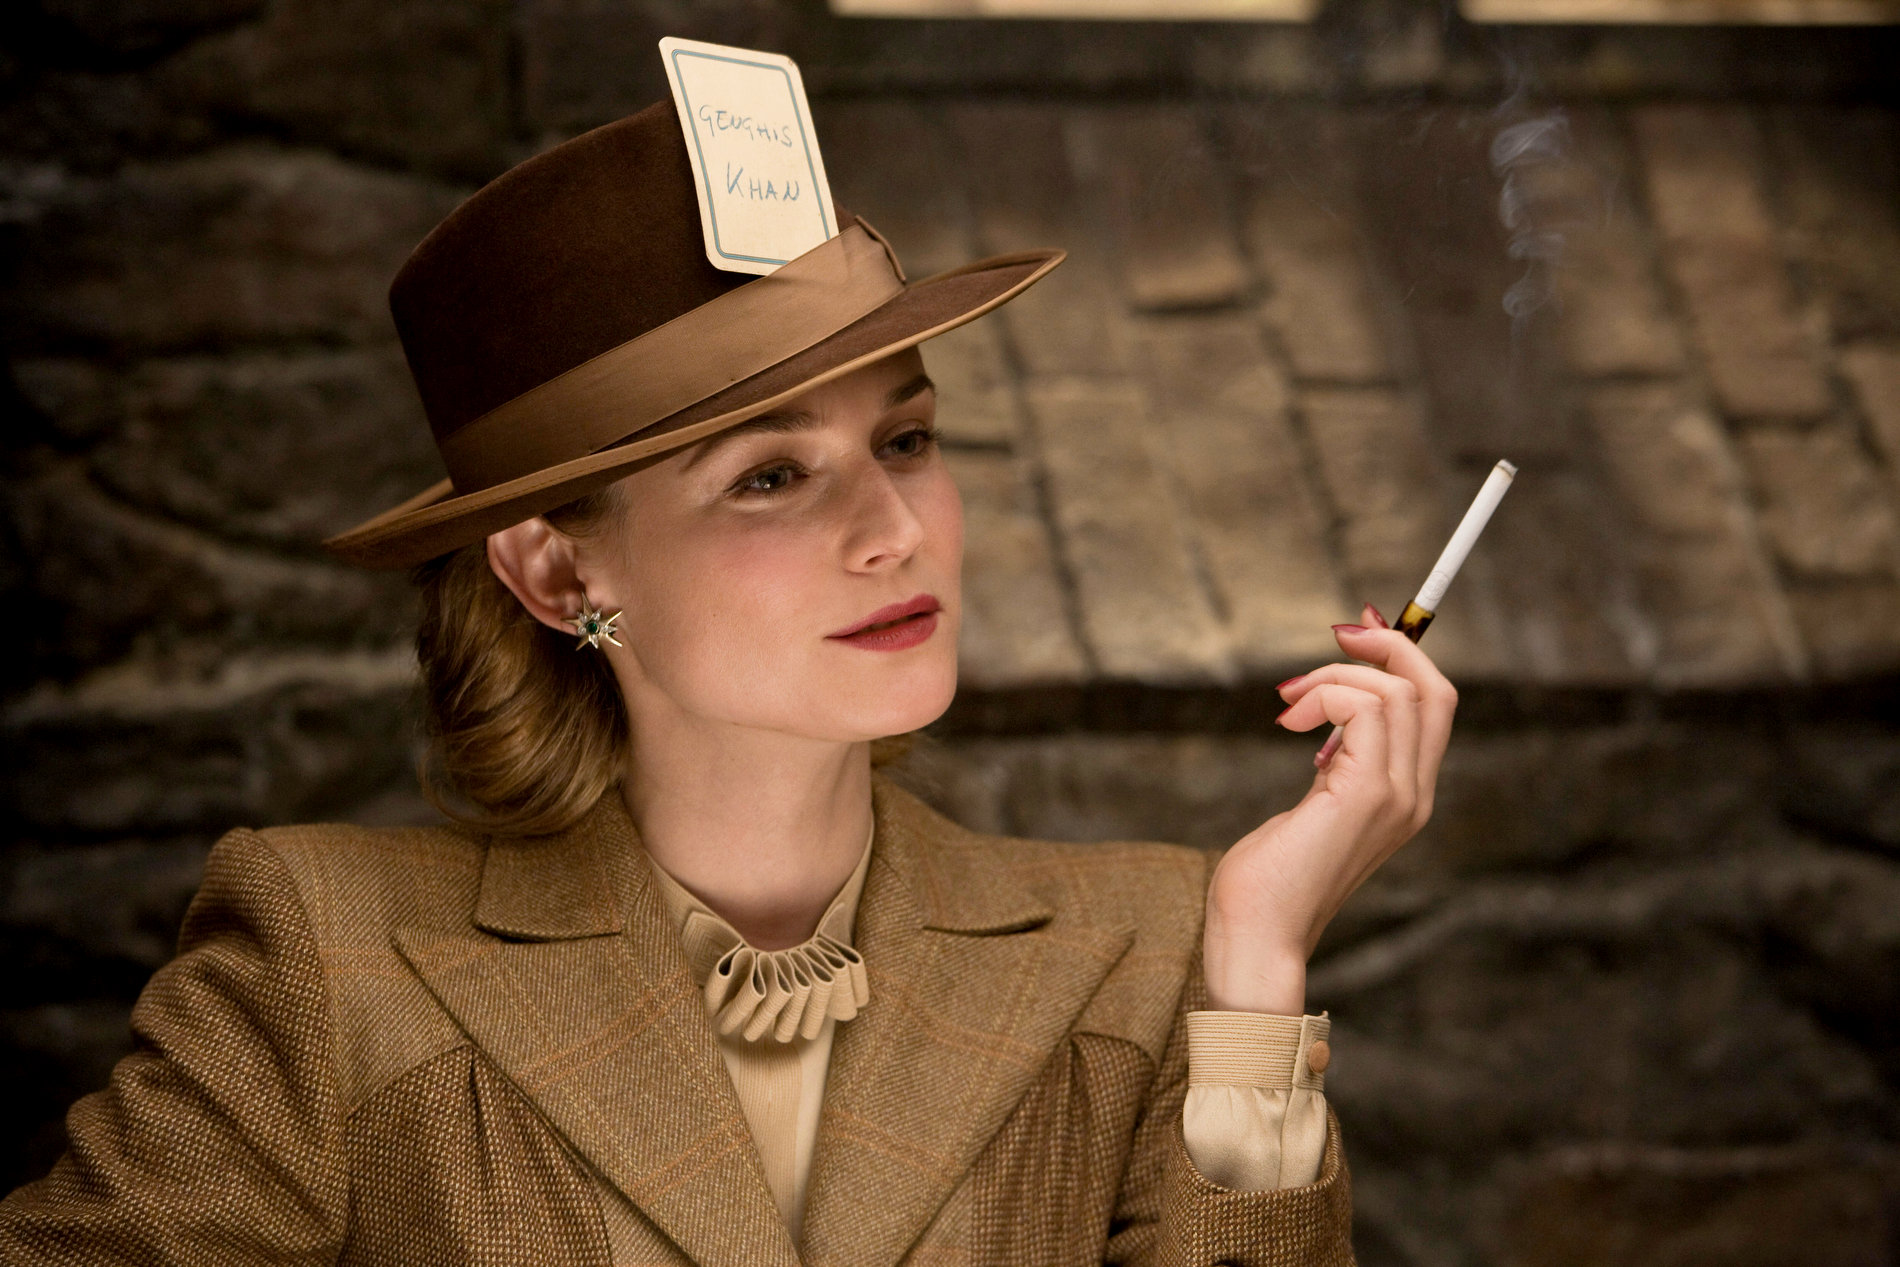 Diane Kruger stars as Bridget von Hammersmark in The Weinstein Company's Inglourious Basterds (2009)